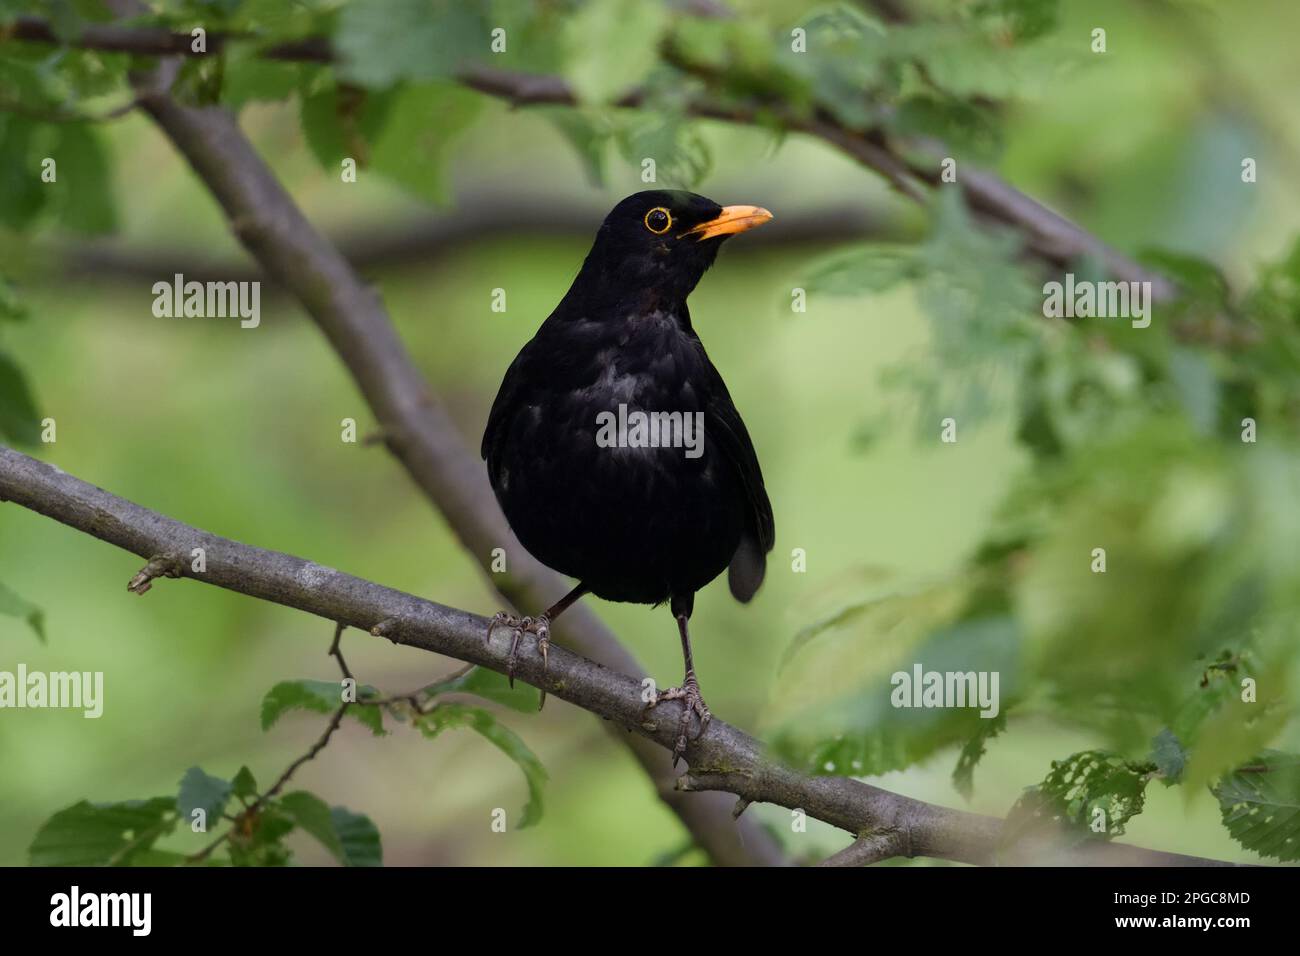 Blackbird comune / Amsel ( Turdus merula ) arroccato su un ramo nel bosco, guardando con attenzione, la fauna selvatica, Europa. Foto Stock